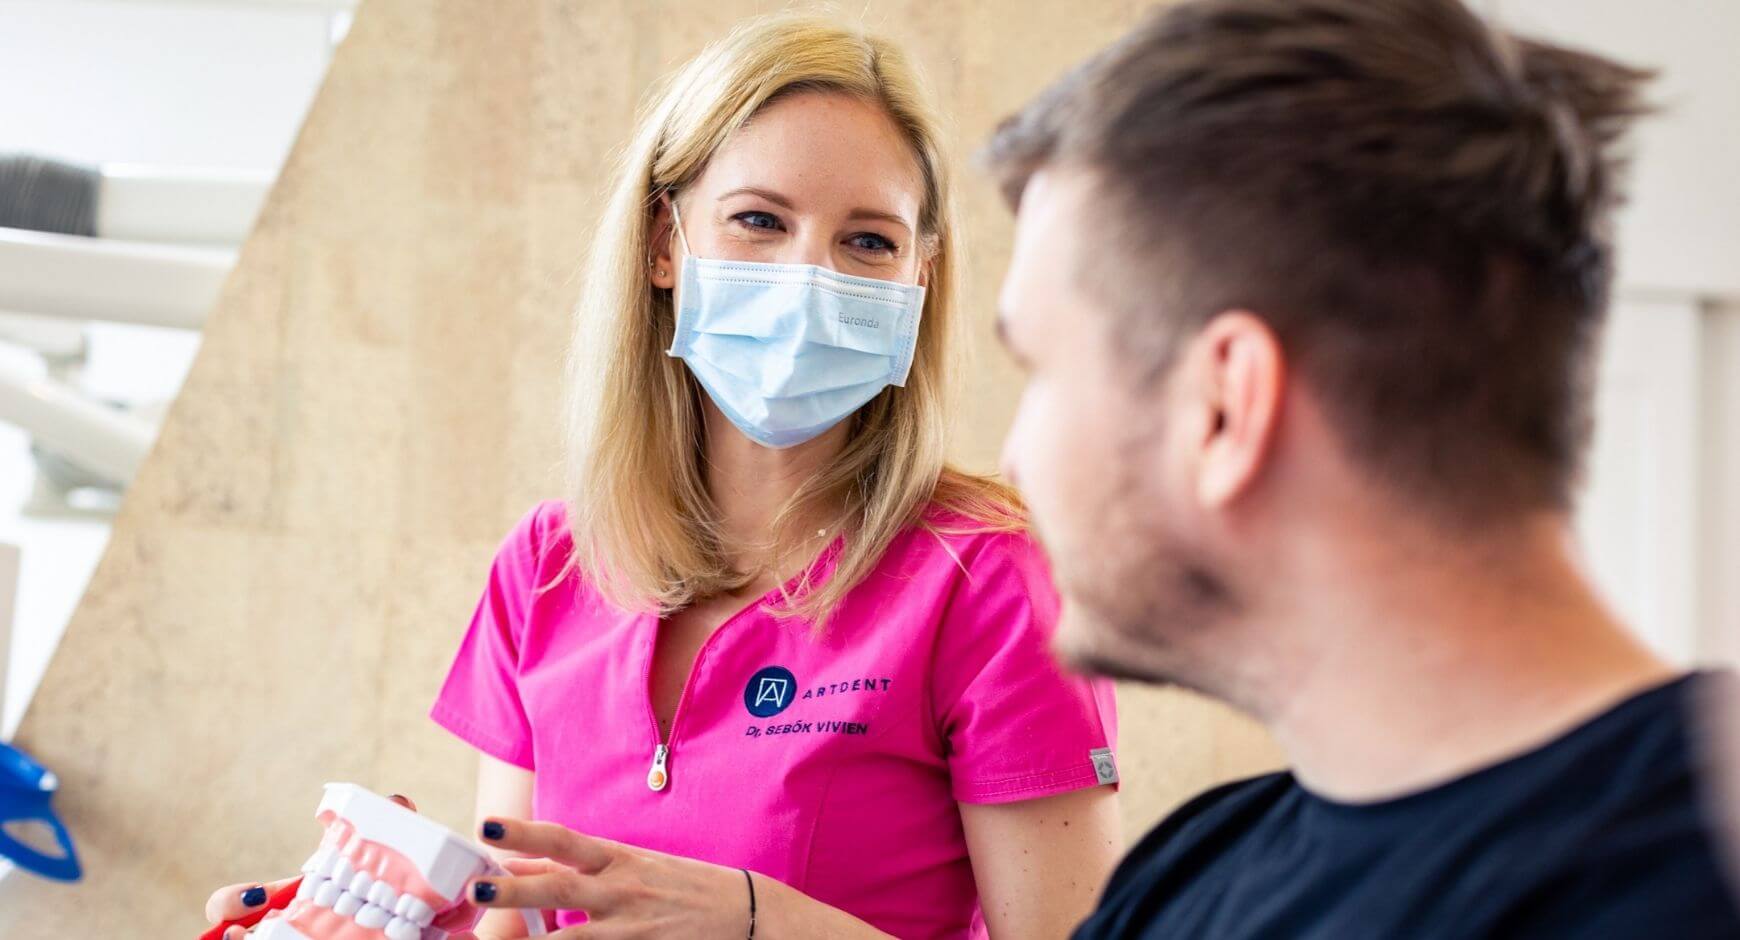 Dr. Sebők Vivien fogorvos szájüregi rákszűrés közben beszélget a pácienssel.